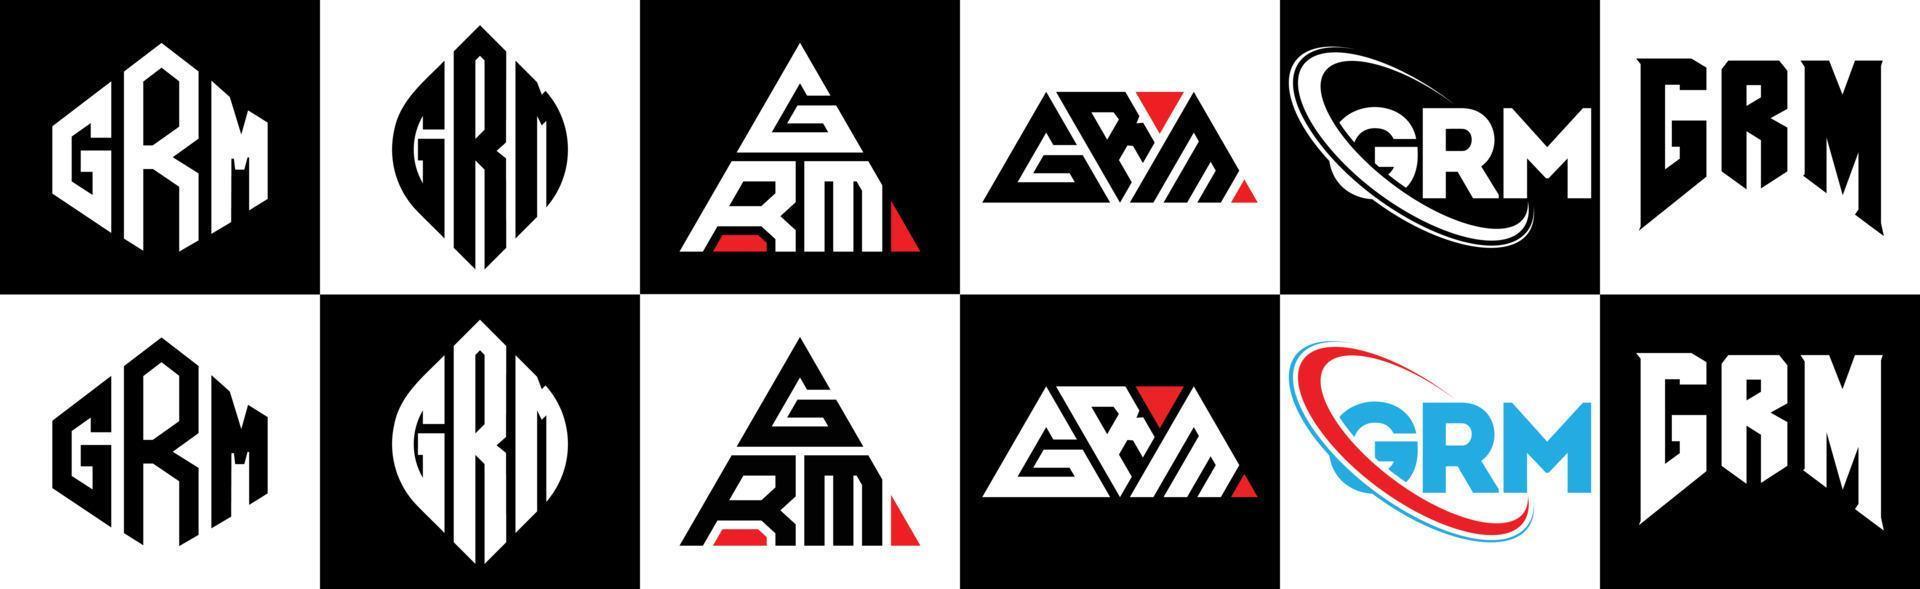 Grm-Buchstaben-Logo-Design in sechs Stilen. grm polygon, kreis, dreieck, sechseck, flacher und einfacher stil mit schwarz-weißem buchstabenlogo in einer zeichenfläche. Grm minimalistisches und klassisches Logo vektor